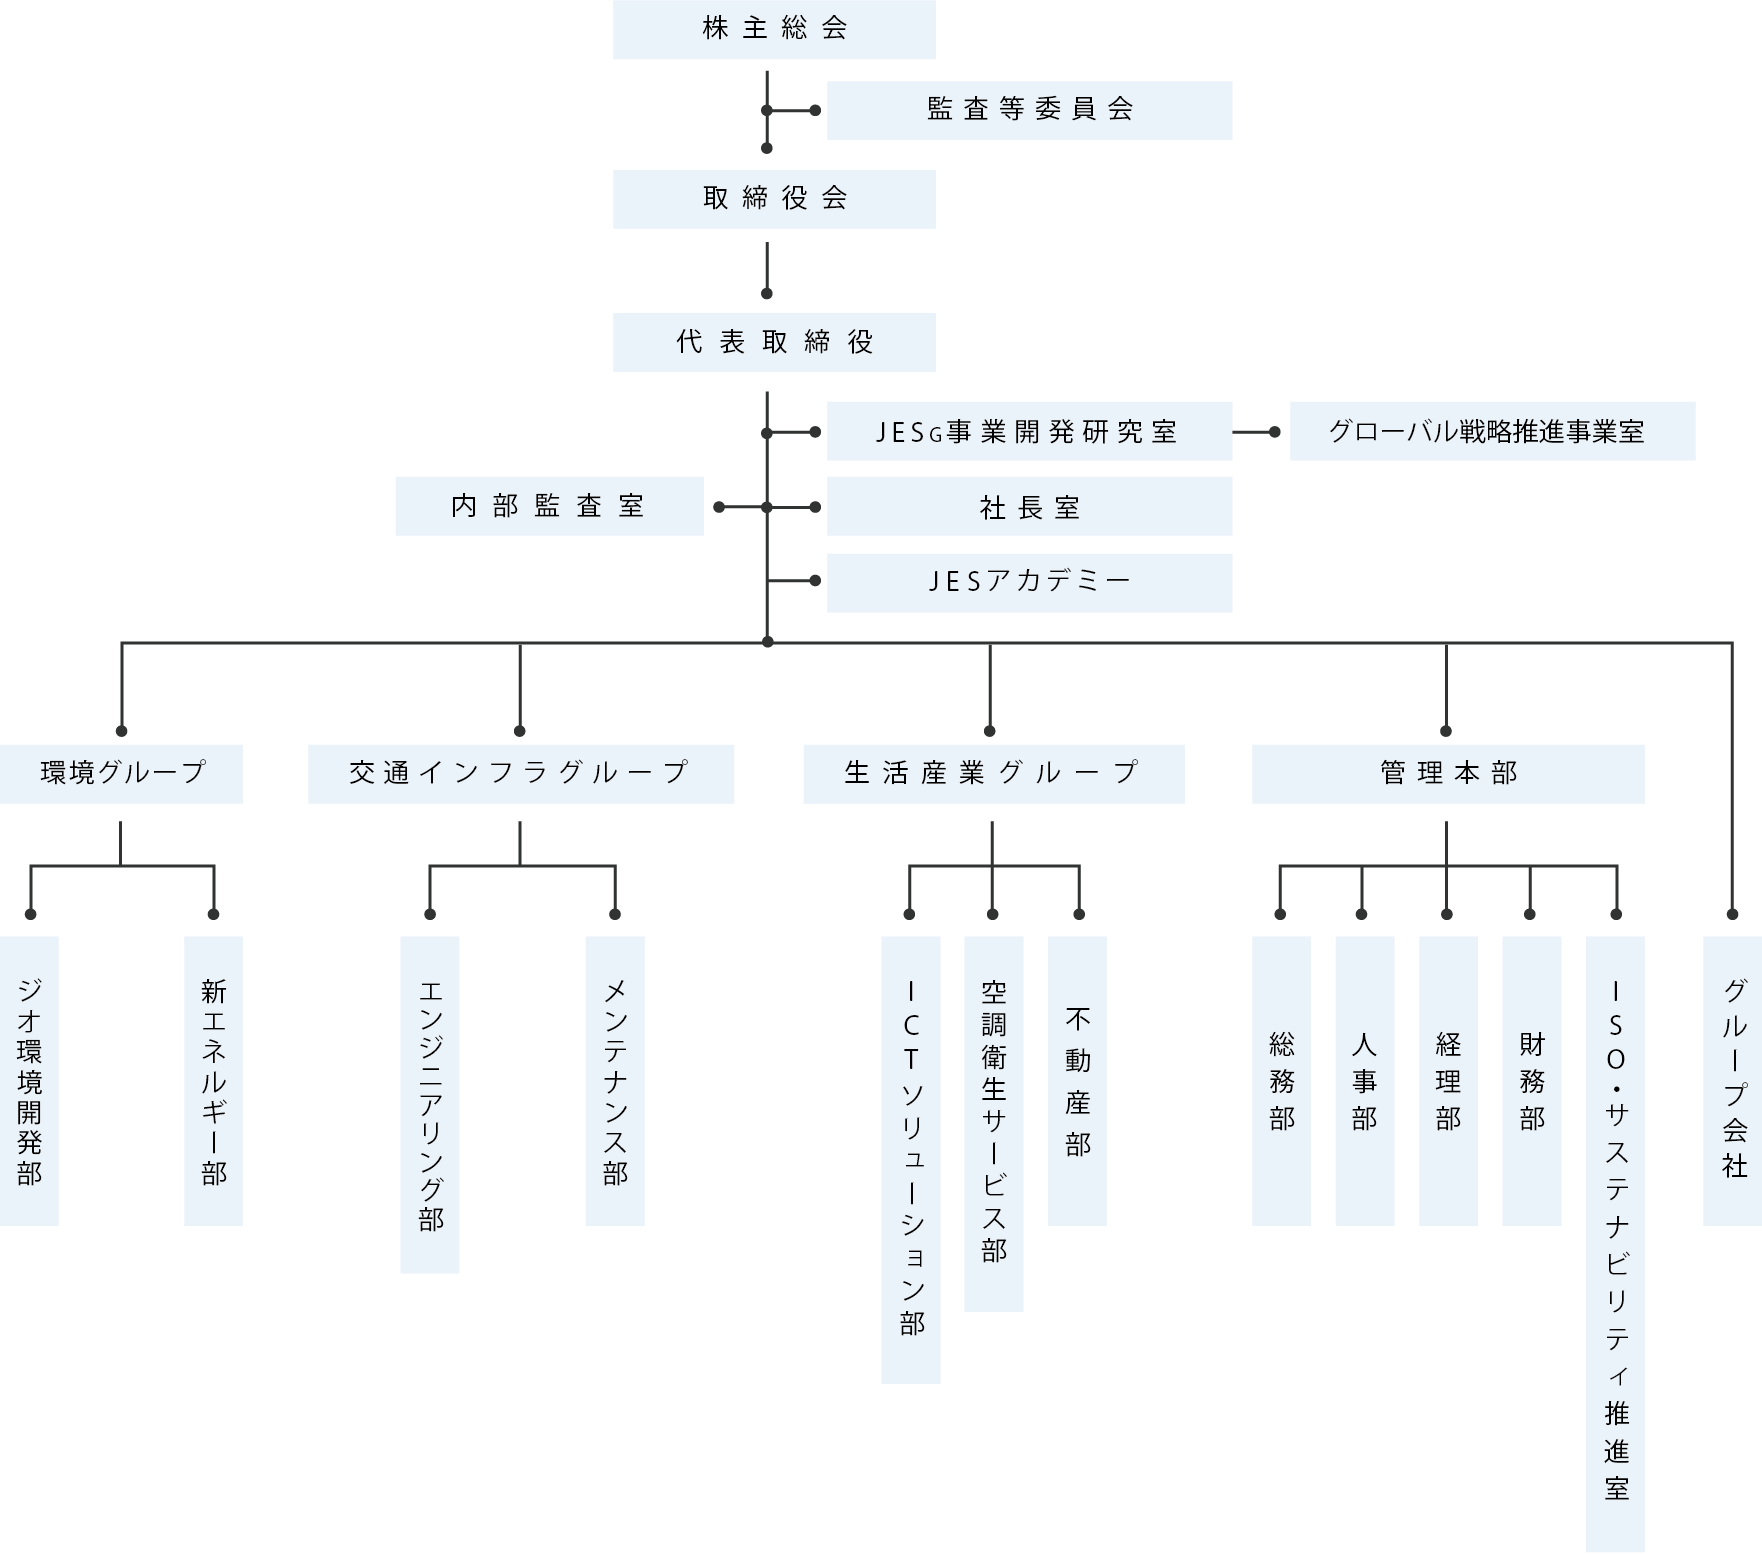 日本エコシステム 組織図